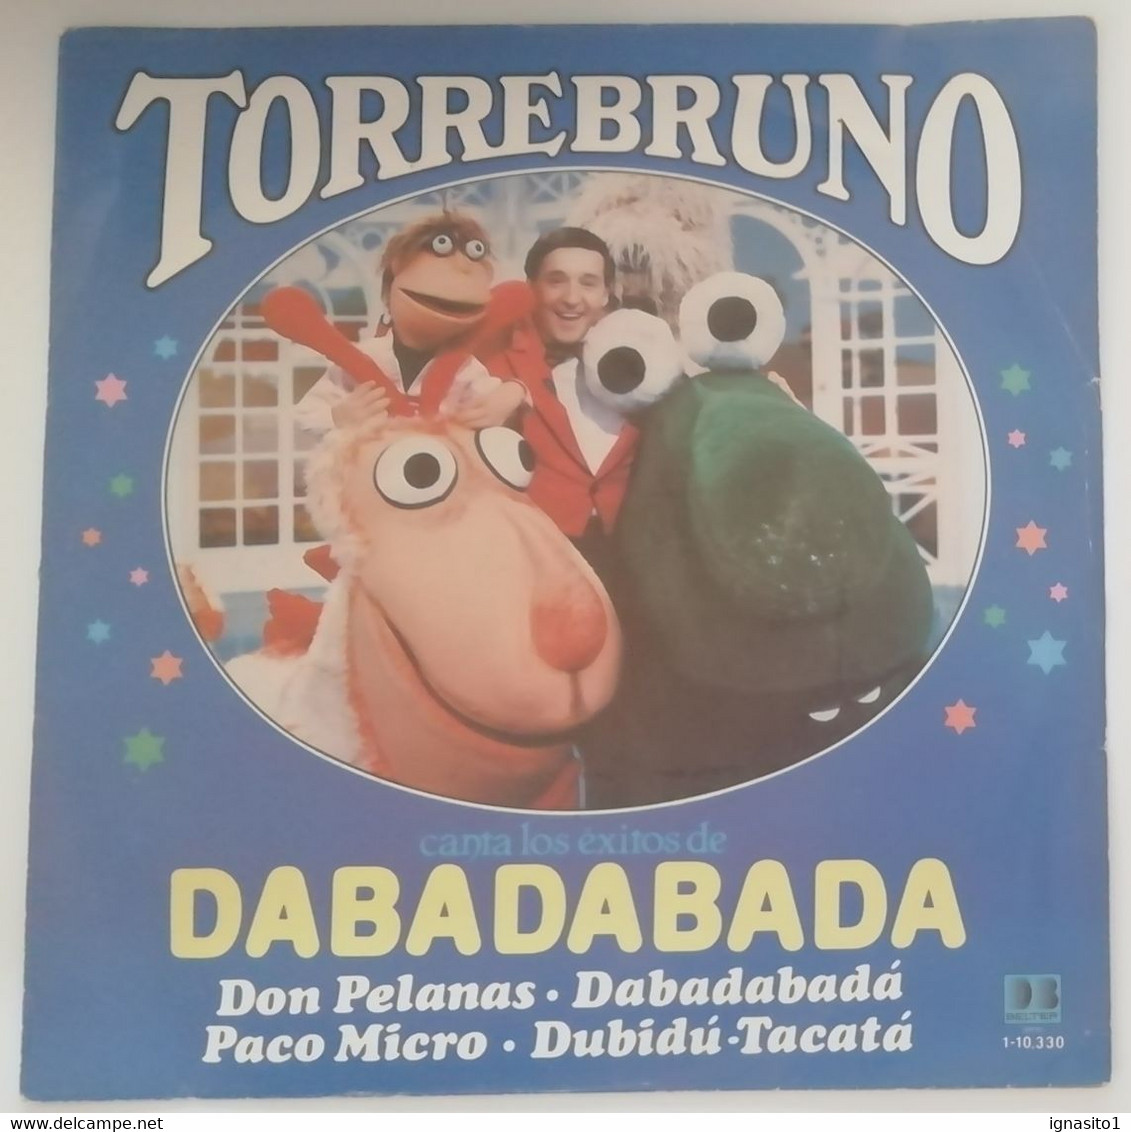 Torrebruno - Don Pelanas / Dabadabada / Paco Micro / Dubidu-tacata - Disco Promocional - Año 1983 - Otros - Canción Española